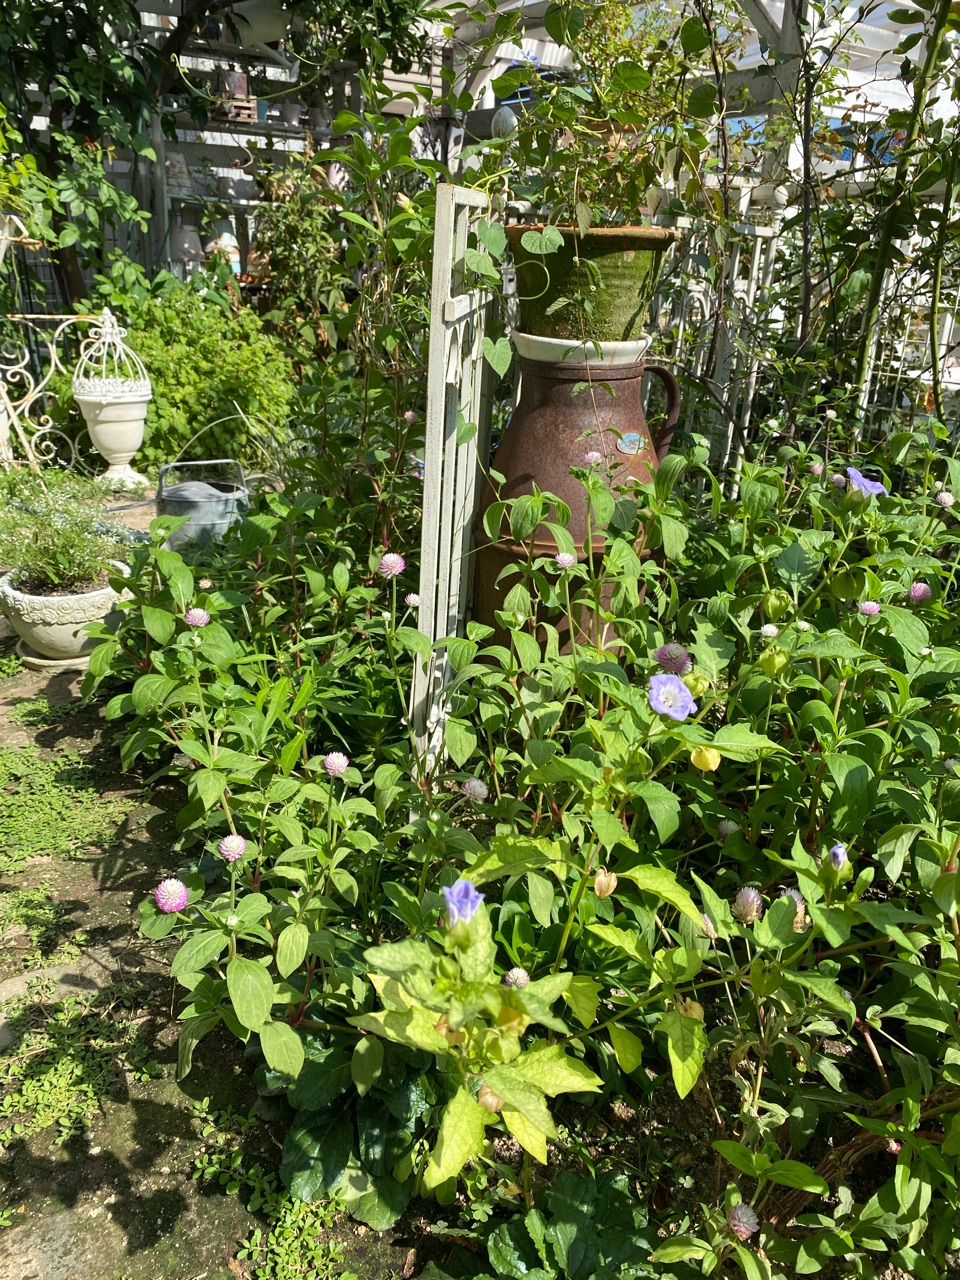 黒ほおずき ニカンドラ の花と実 のばらのガーデニングブログ Hana And Rose Garden Powered By ライブドアブログ